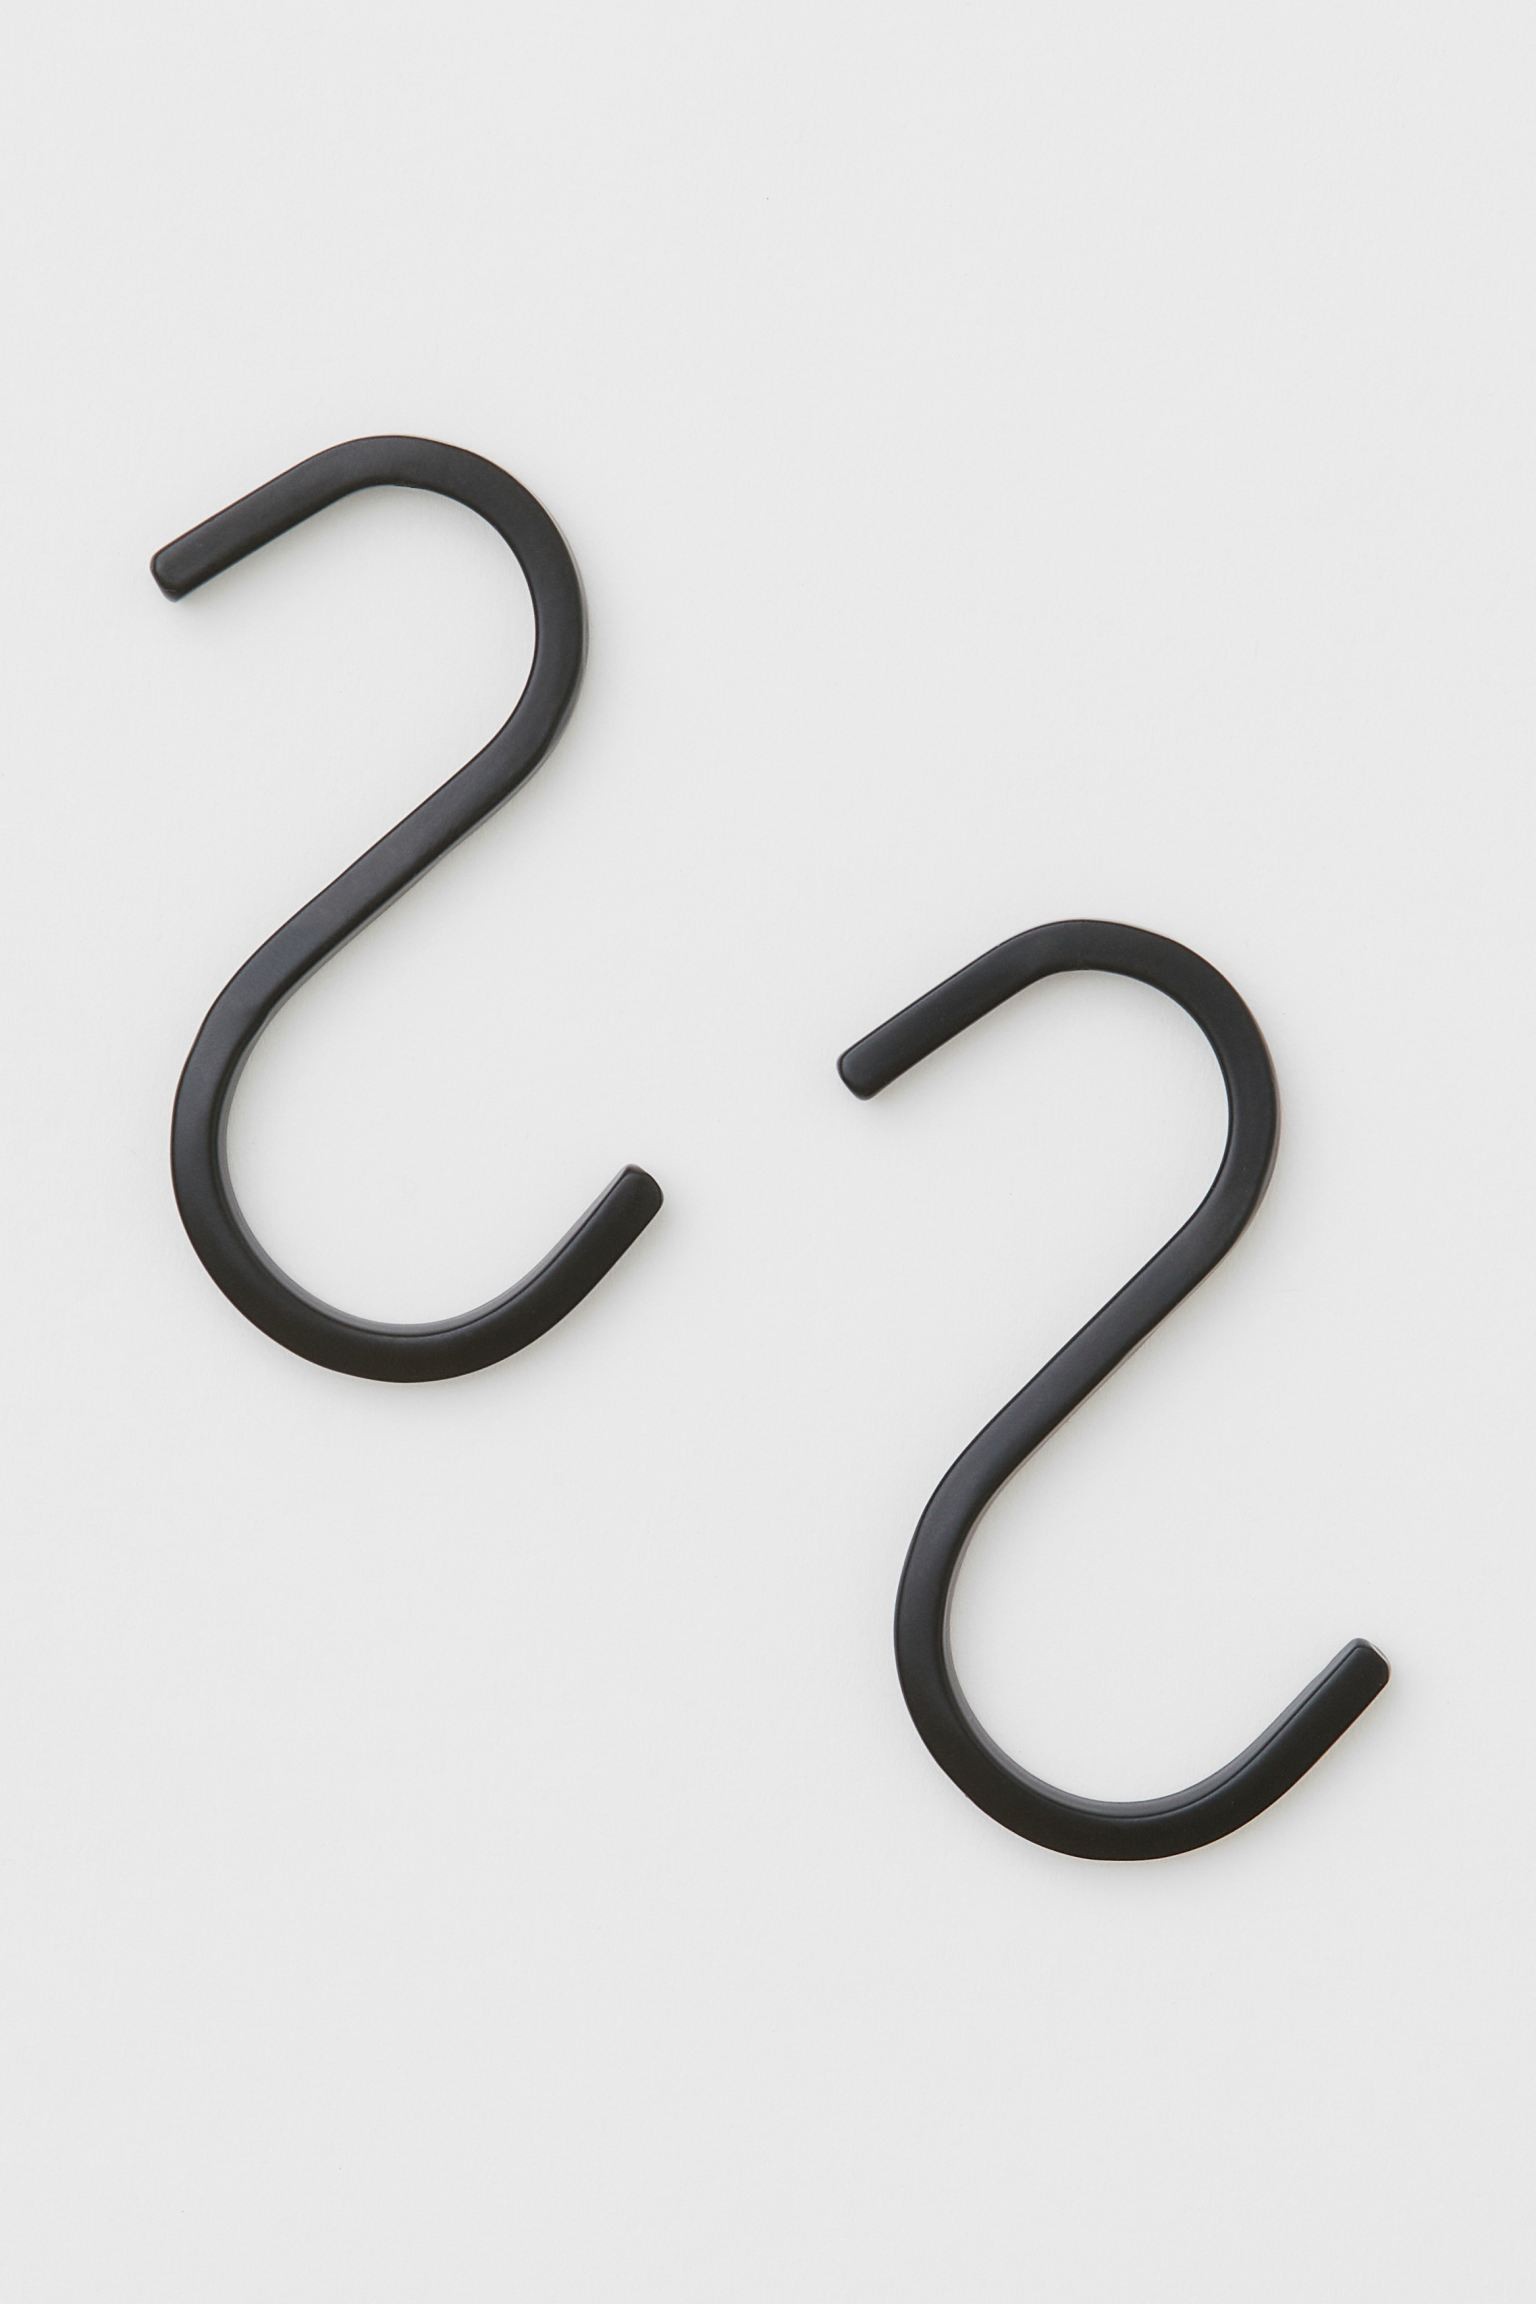 H&M Home S-образные крючки, 2шт., Черный 1010239001 | 1010239001